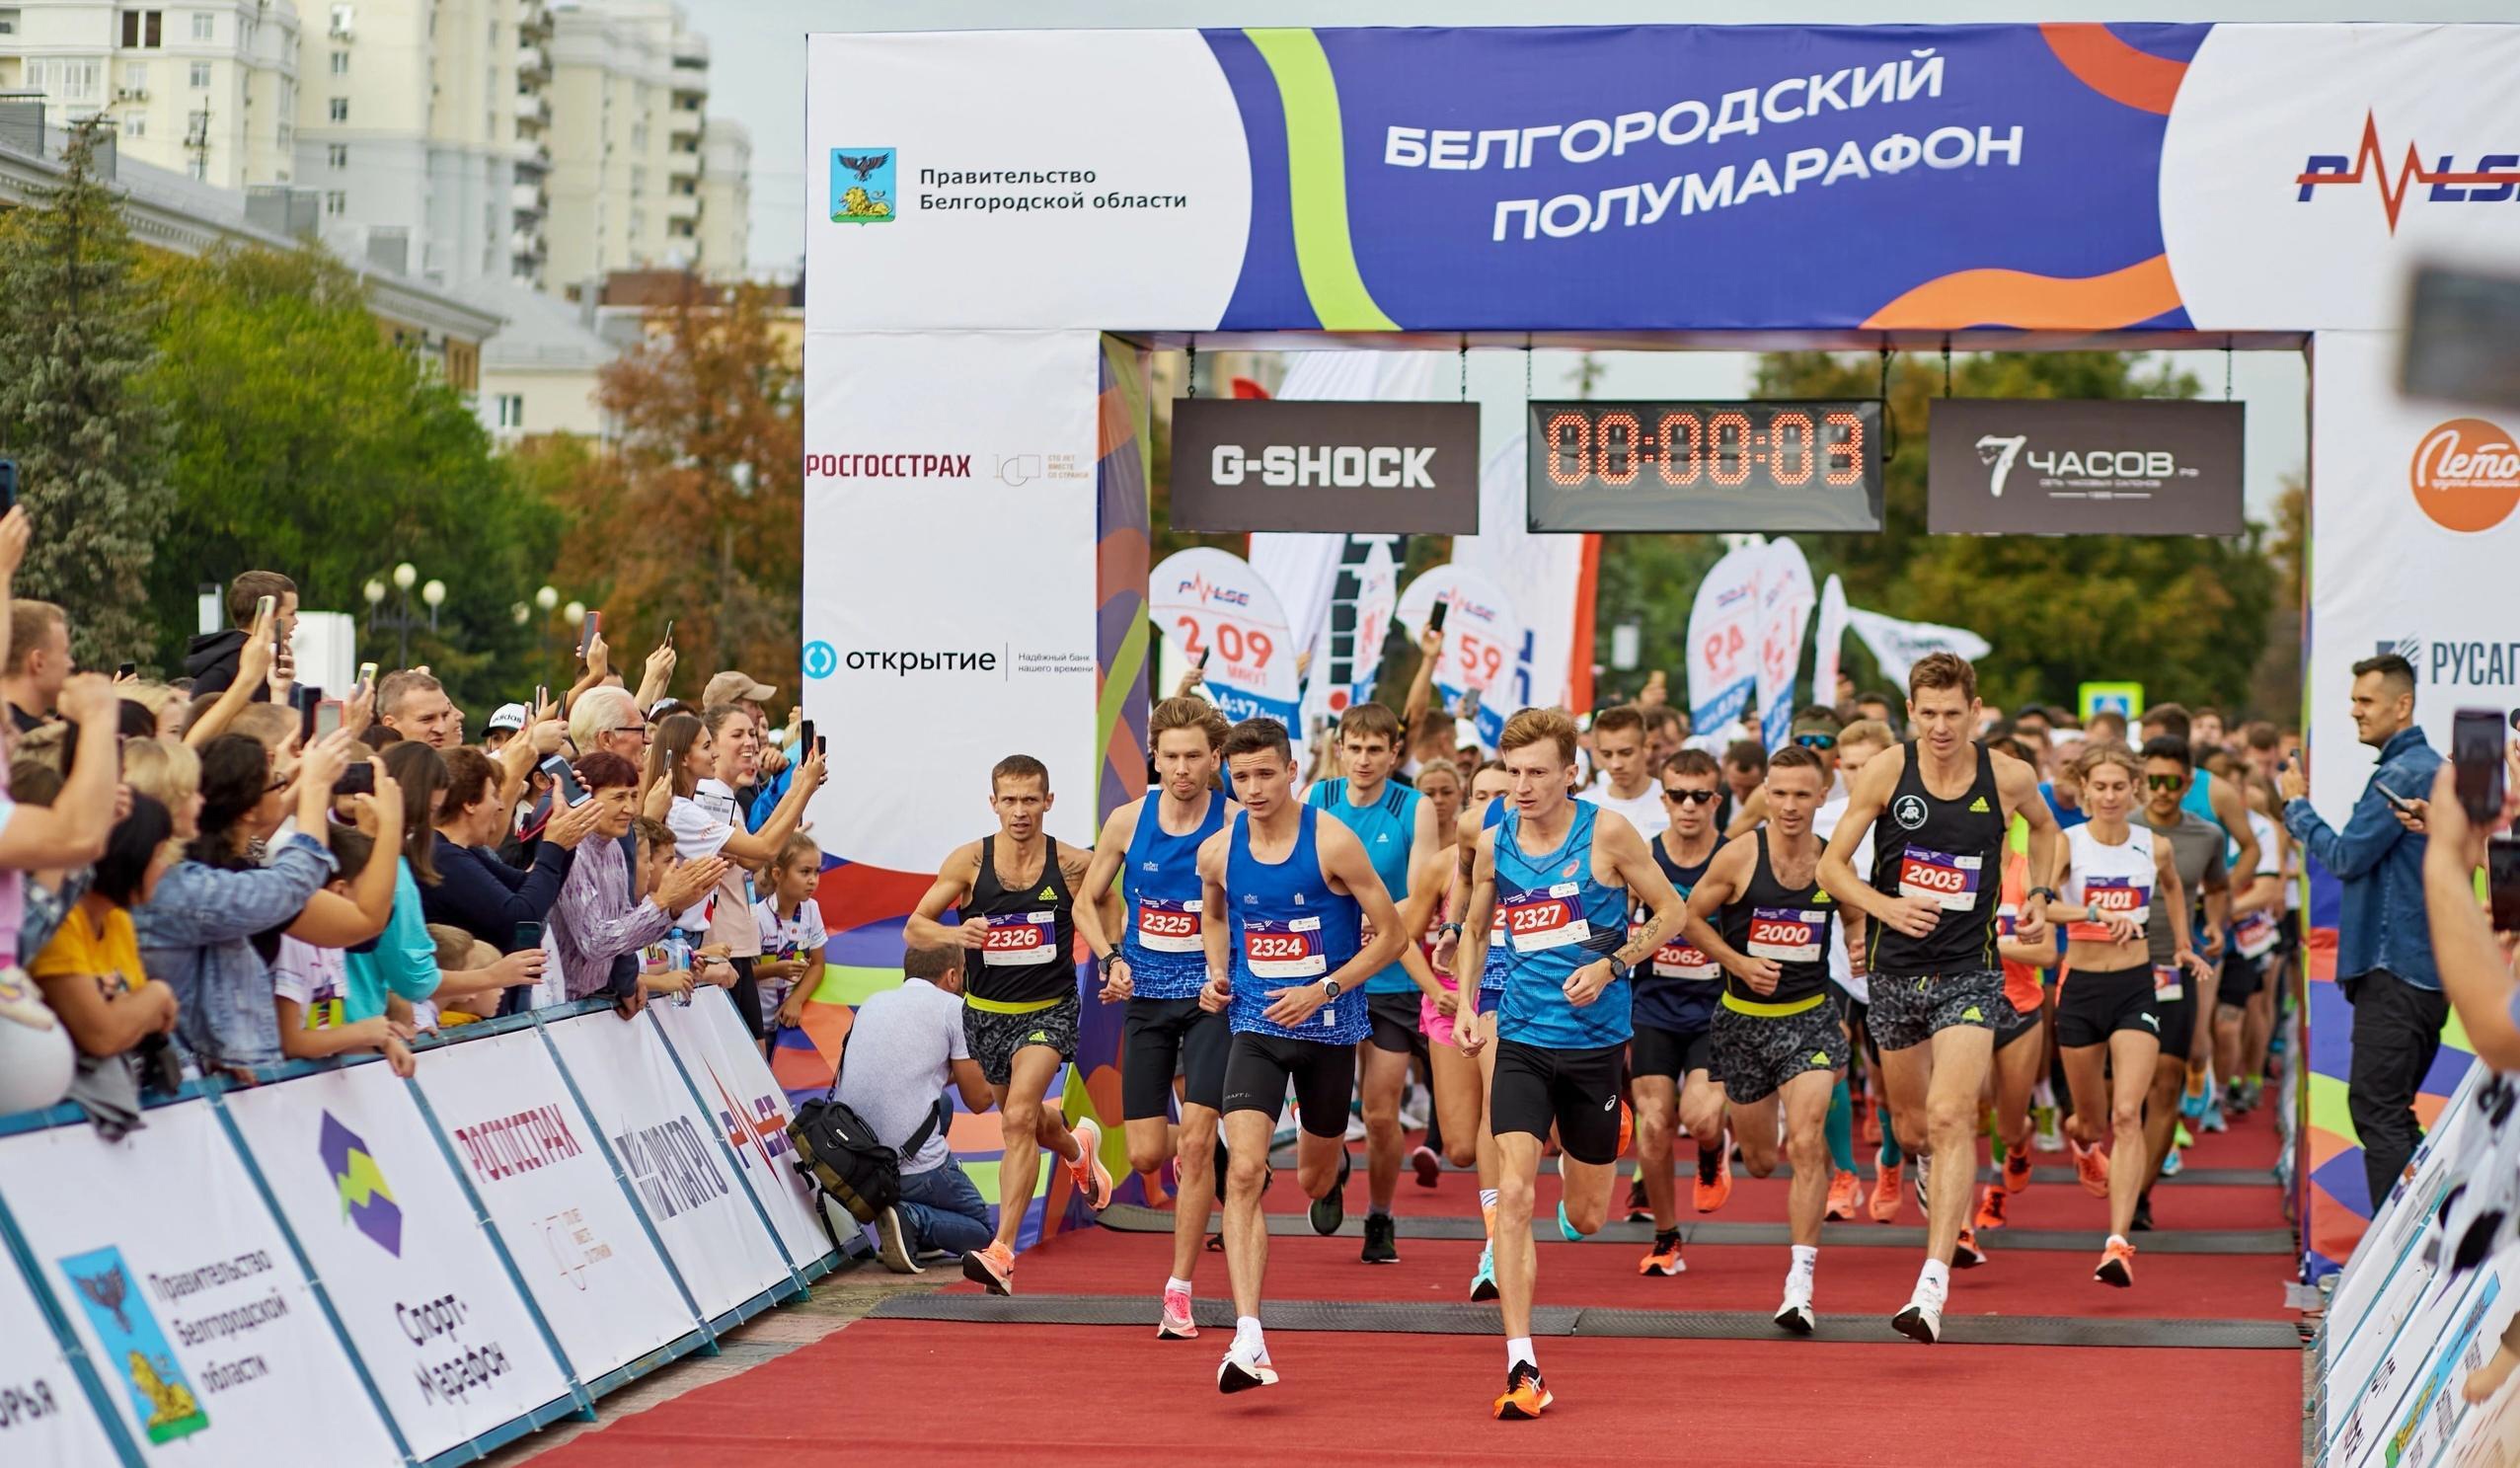 Белгород - один из лучших в стране по развитию массового спорта.